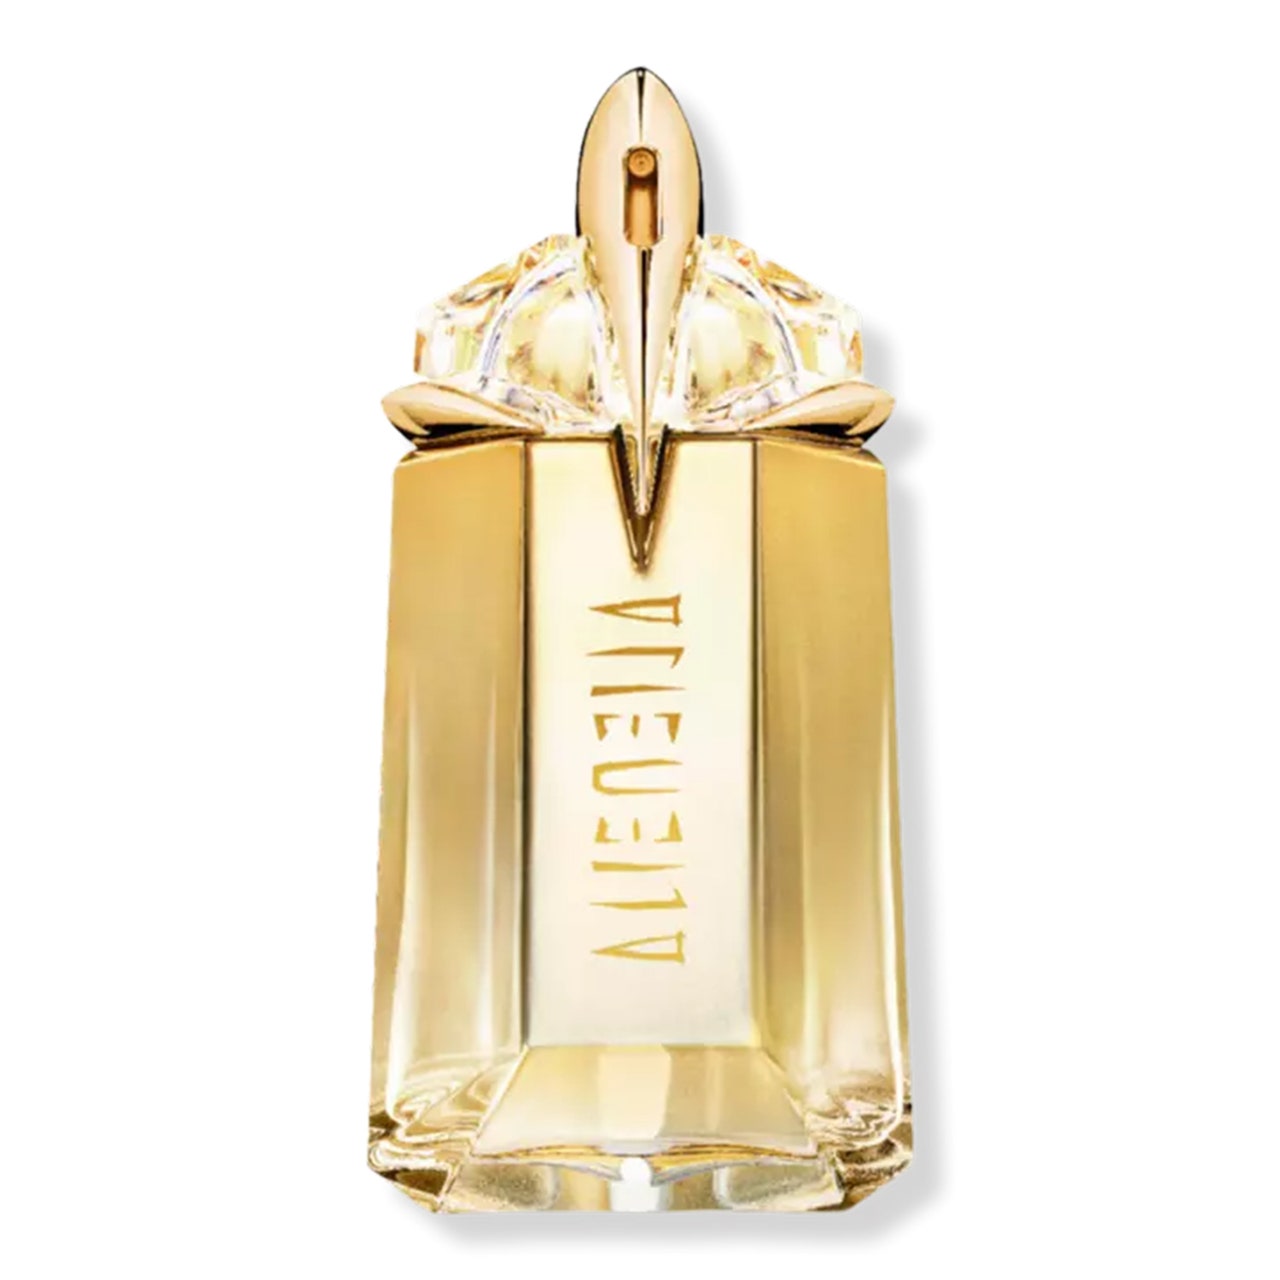 Mugler Alien Goddess Eau de Parfum verzierte goldene Parfümflasche auf weißem Hintergrund